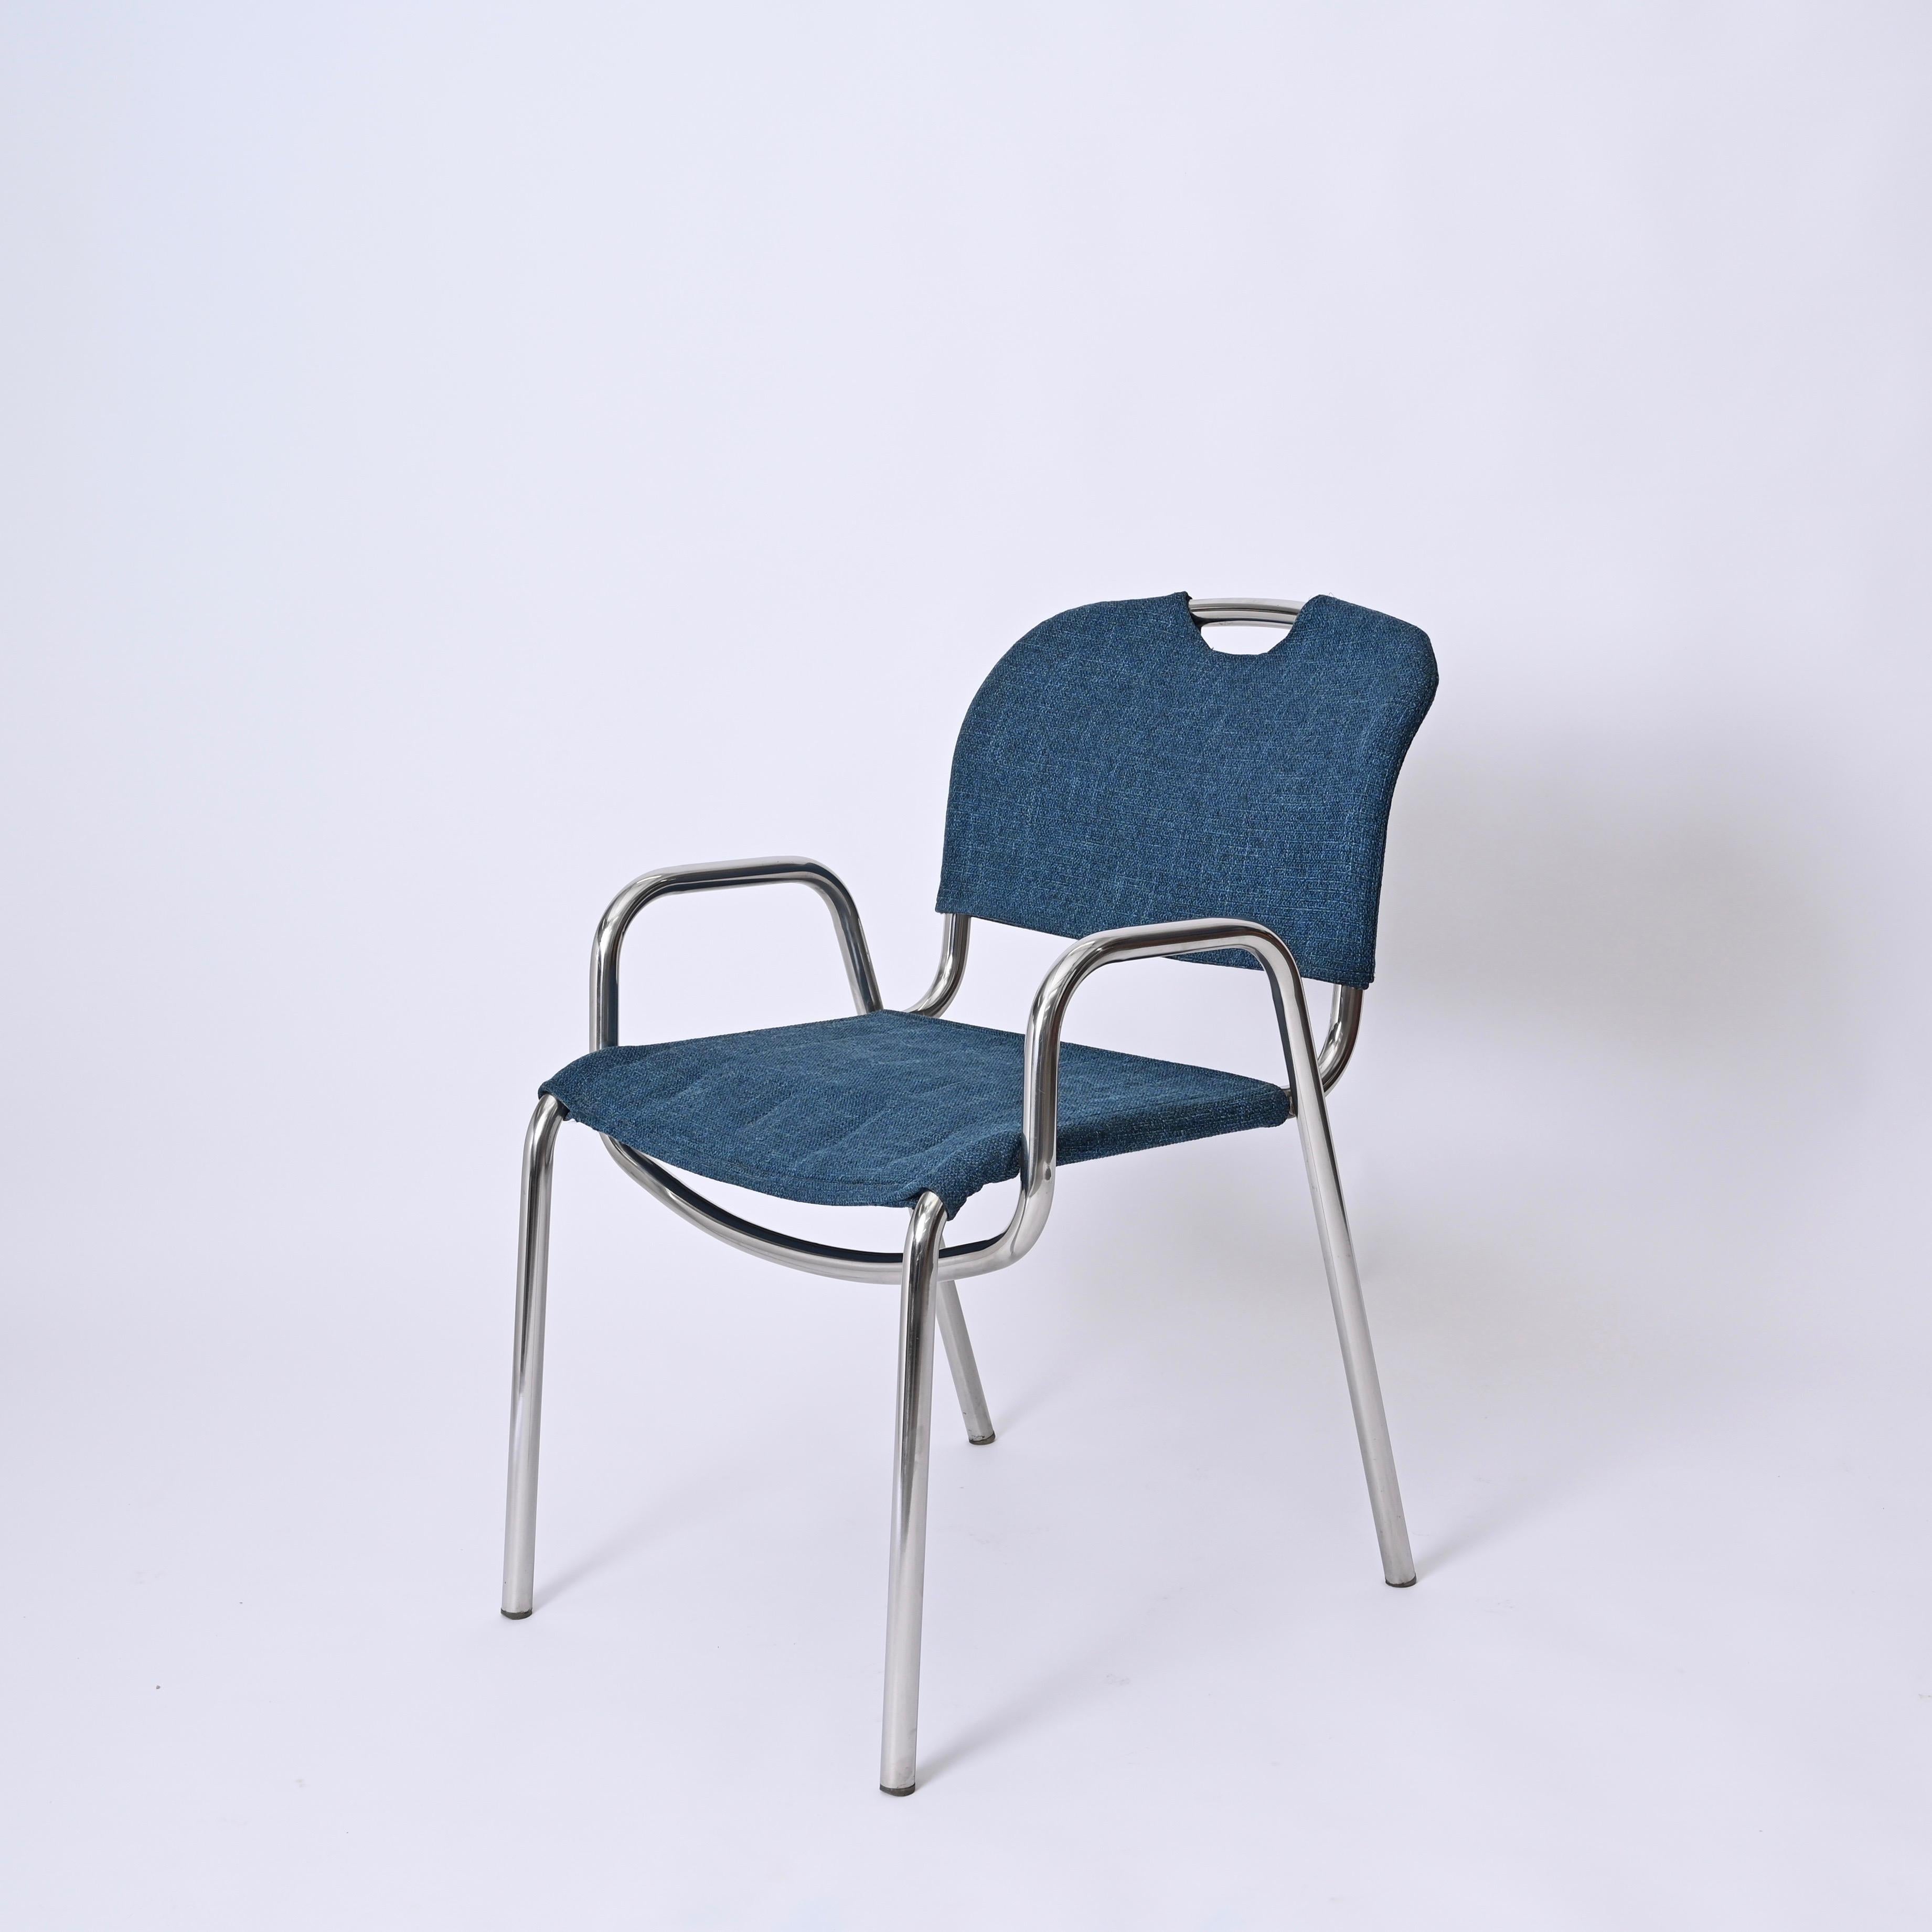 Pair of Blue Castiglietta Dining Chairs by Castiglioni for Zanotta, Italy 1960s For Sale 1